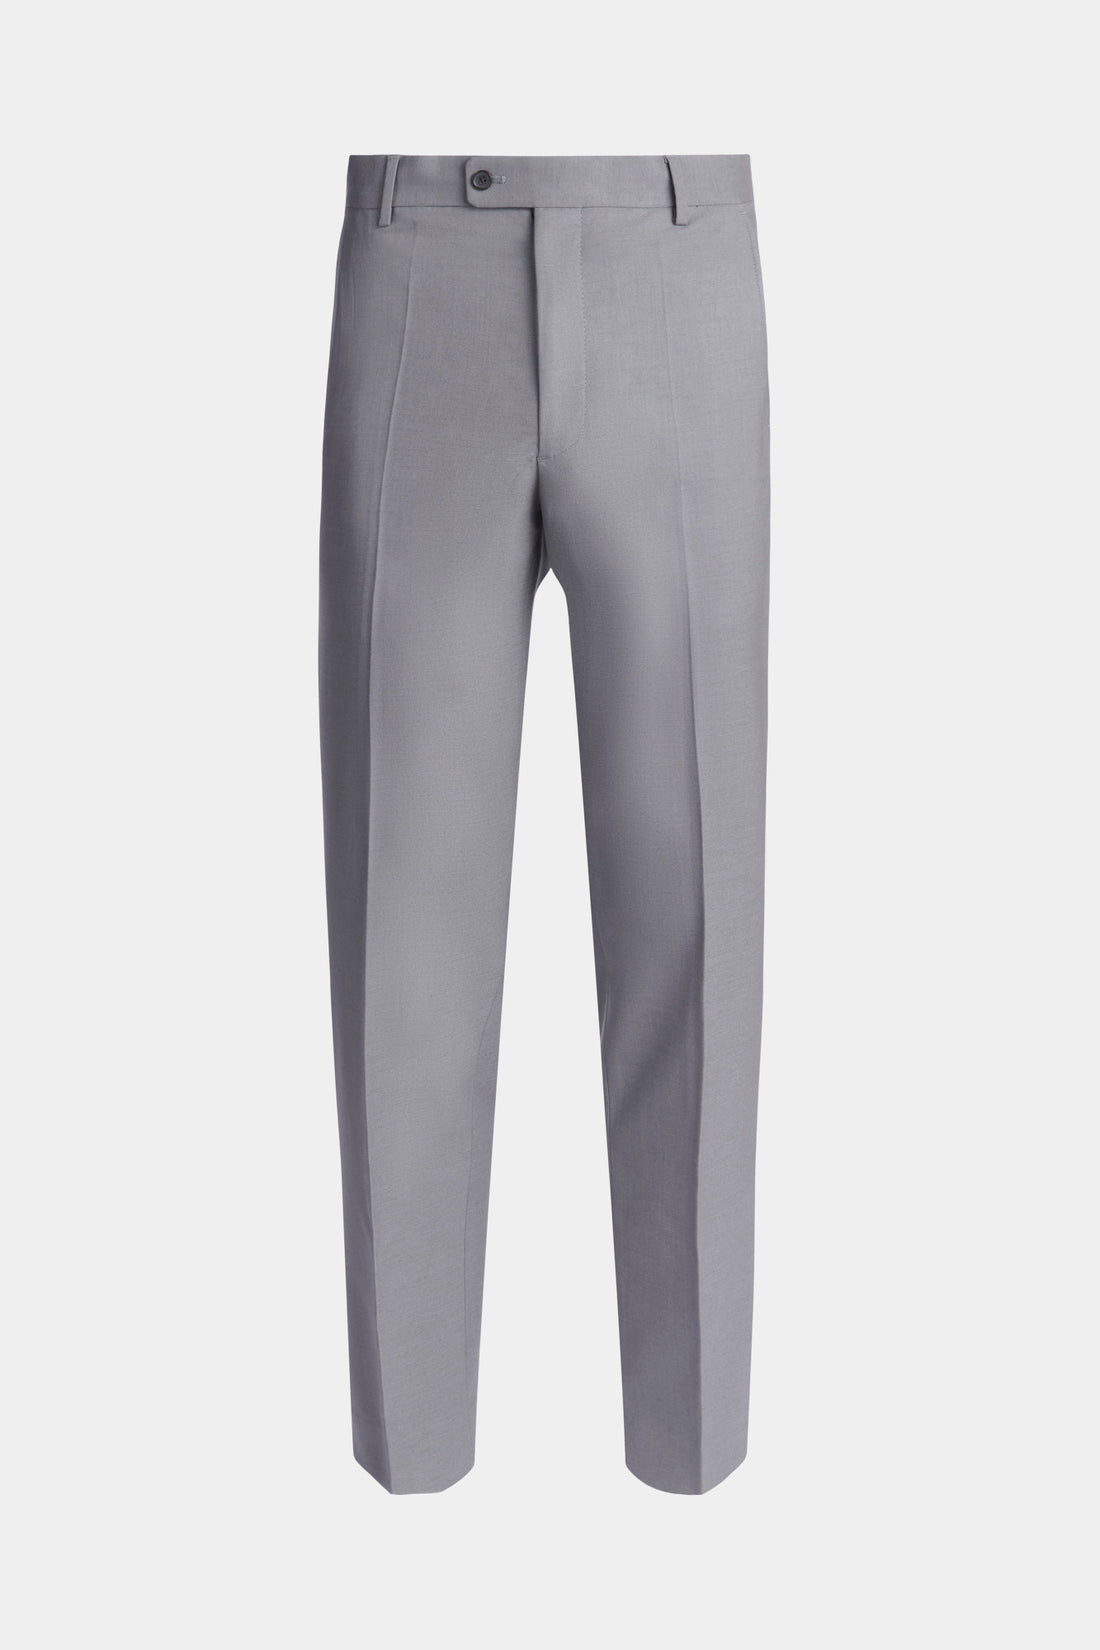 Buy Men Grey Regular Fit Solid Casual Trousers Online - 851972 | Allen Solly